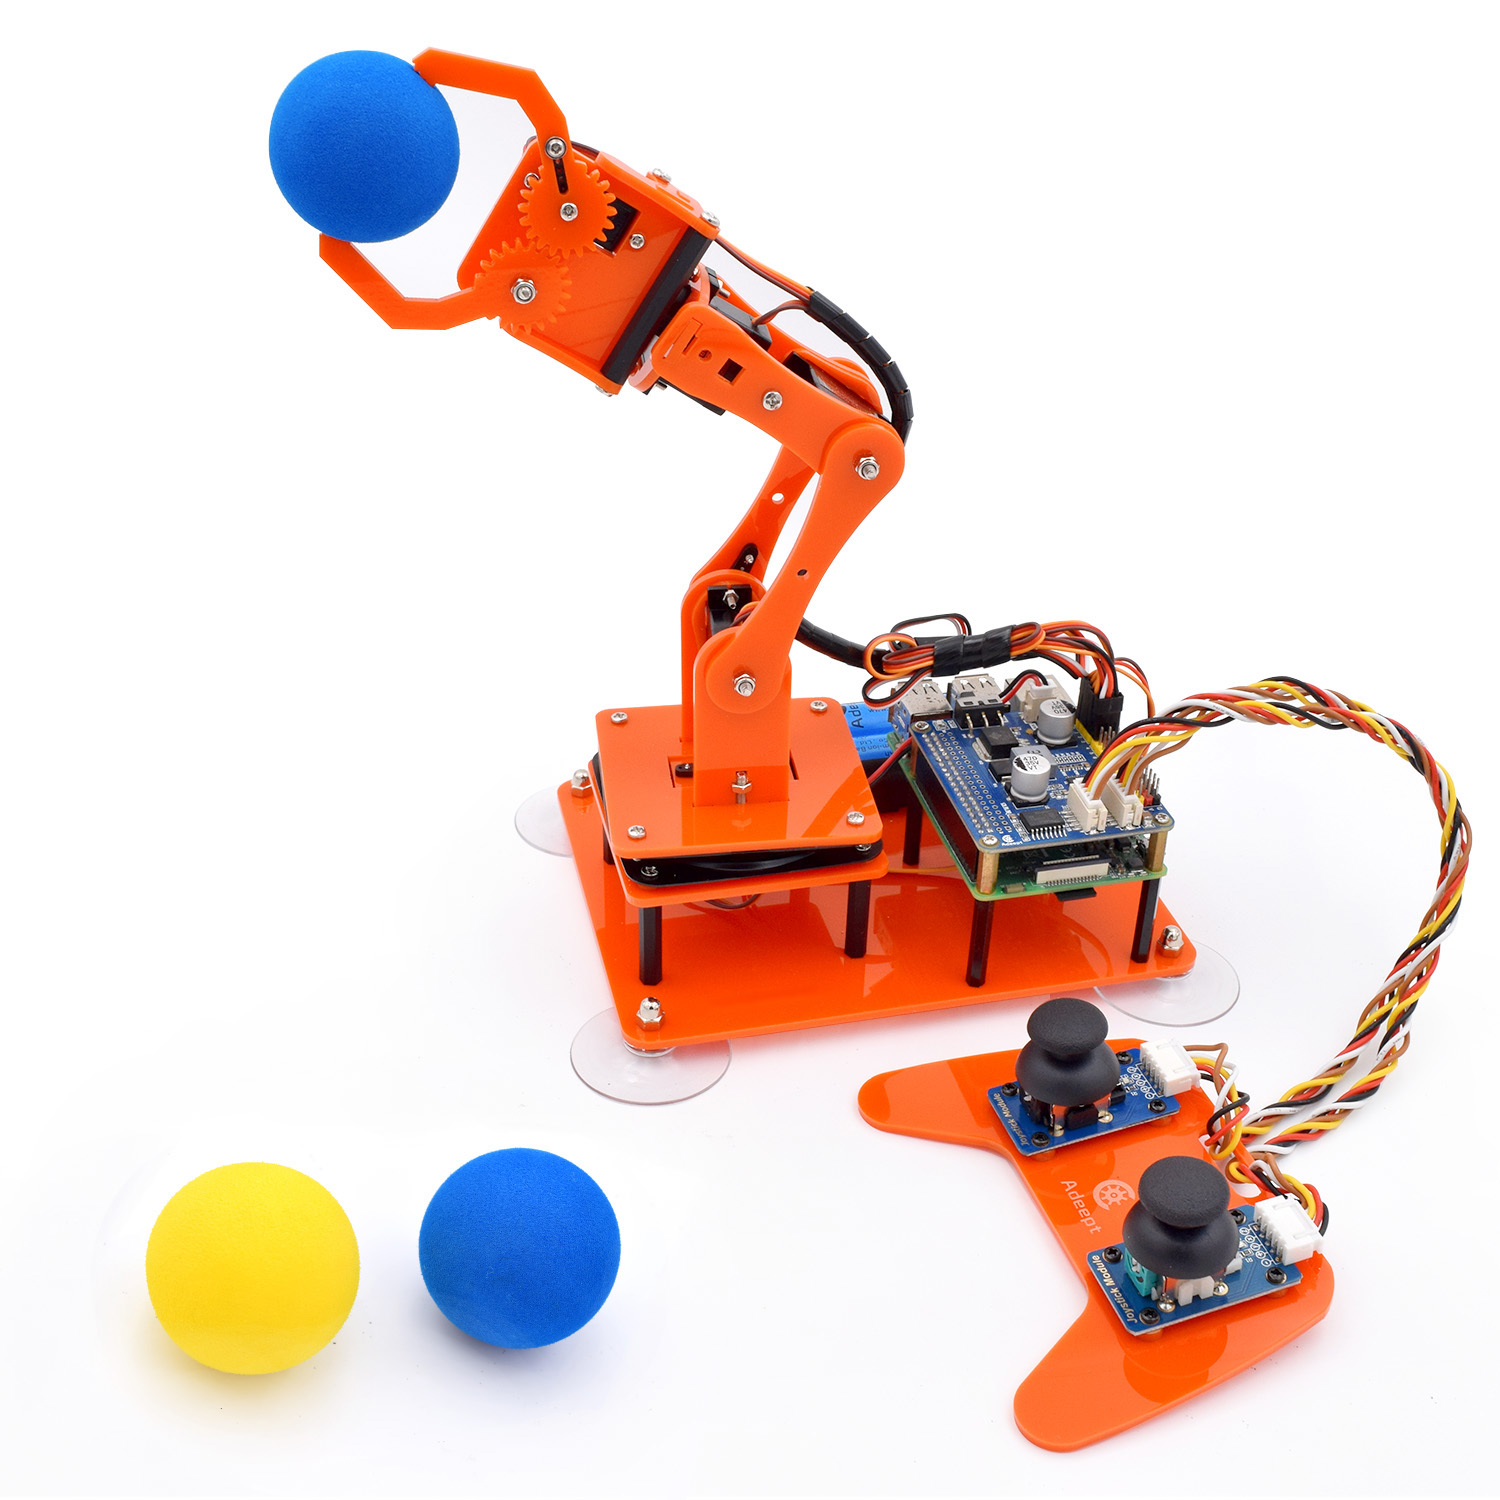 Arm Robot Using Arduino | lupon.gov.ph